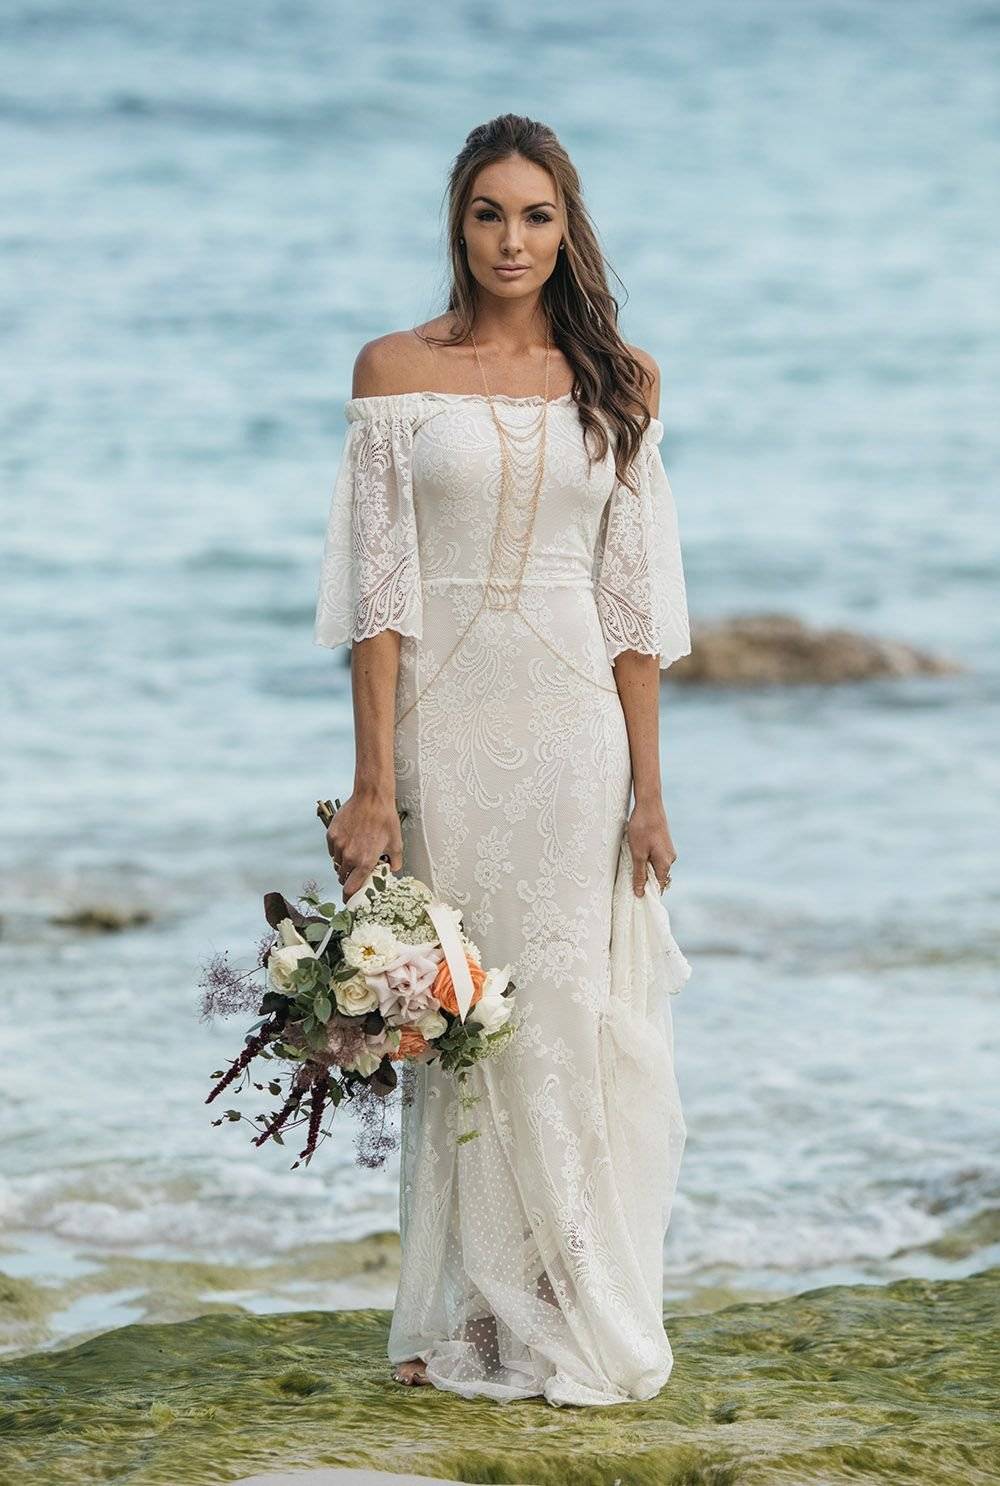 Прямое свадебное платье — утонченный свадебный образ